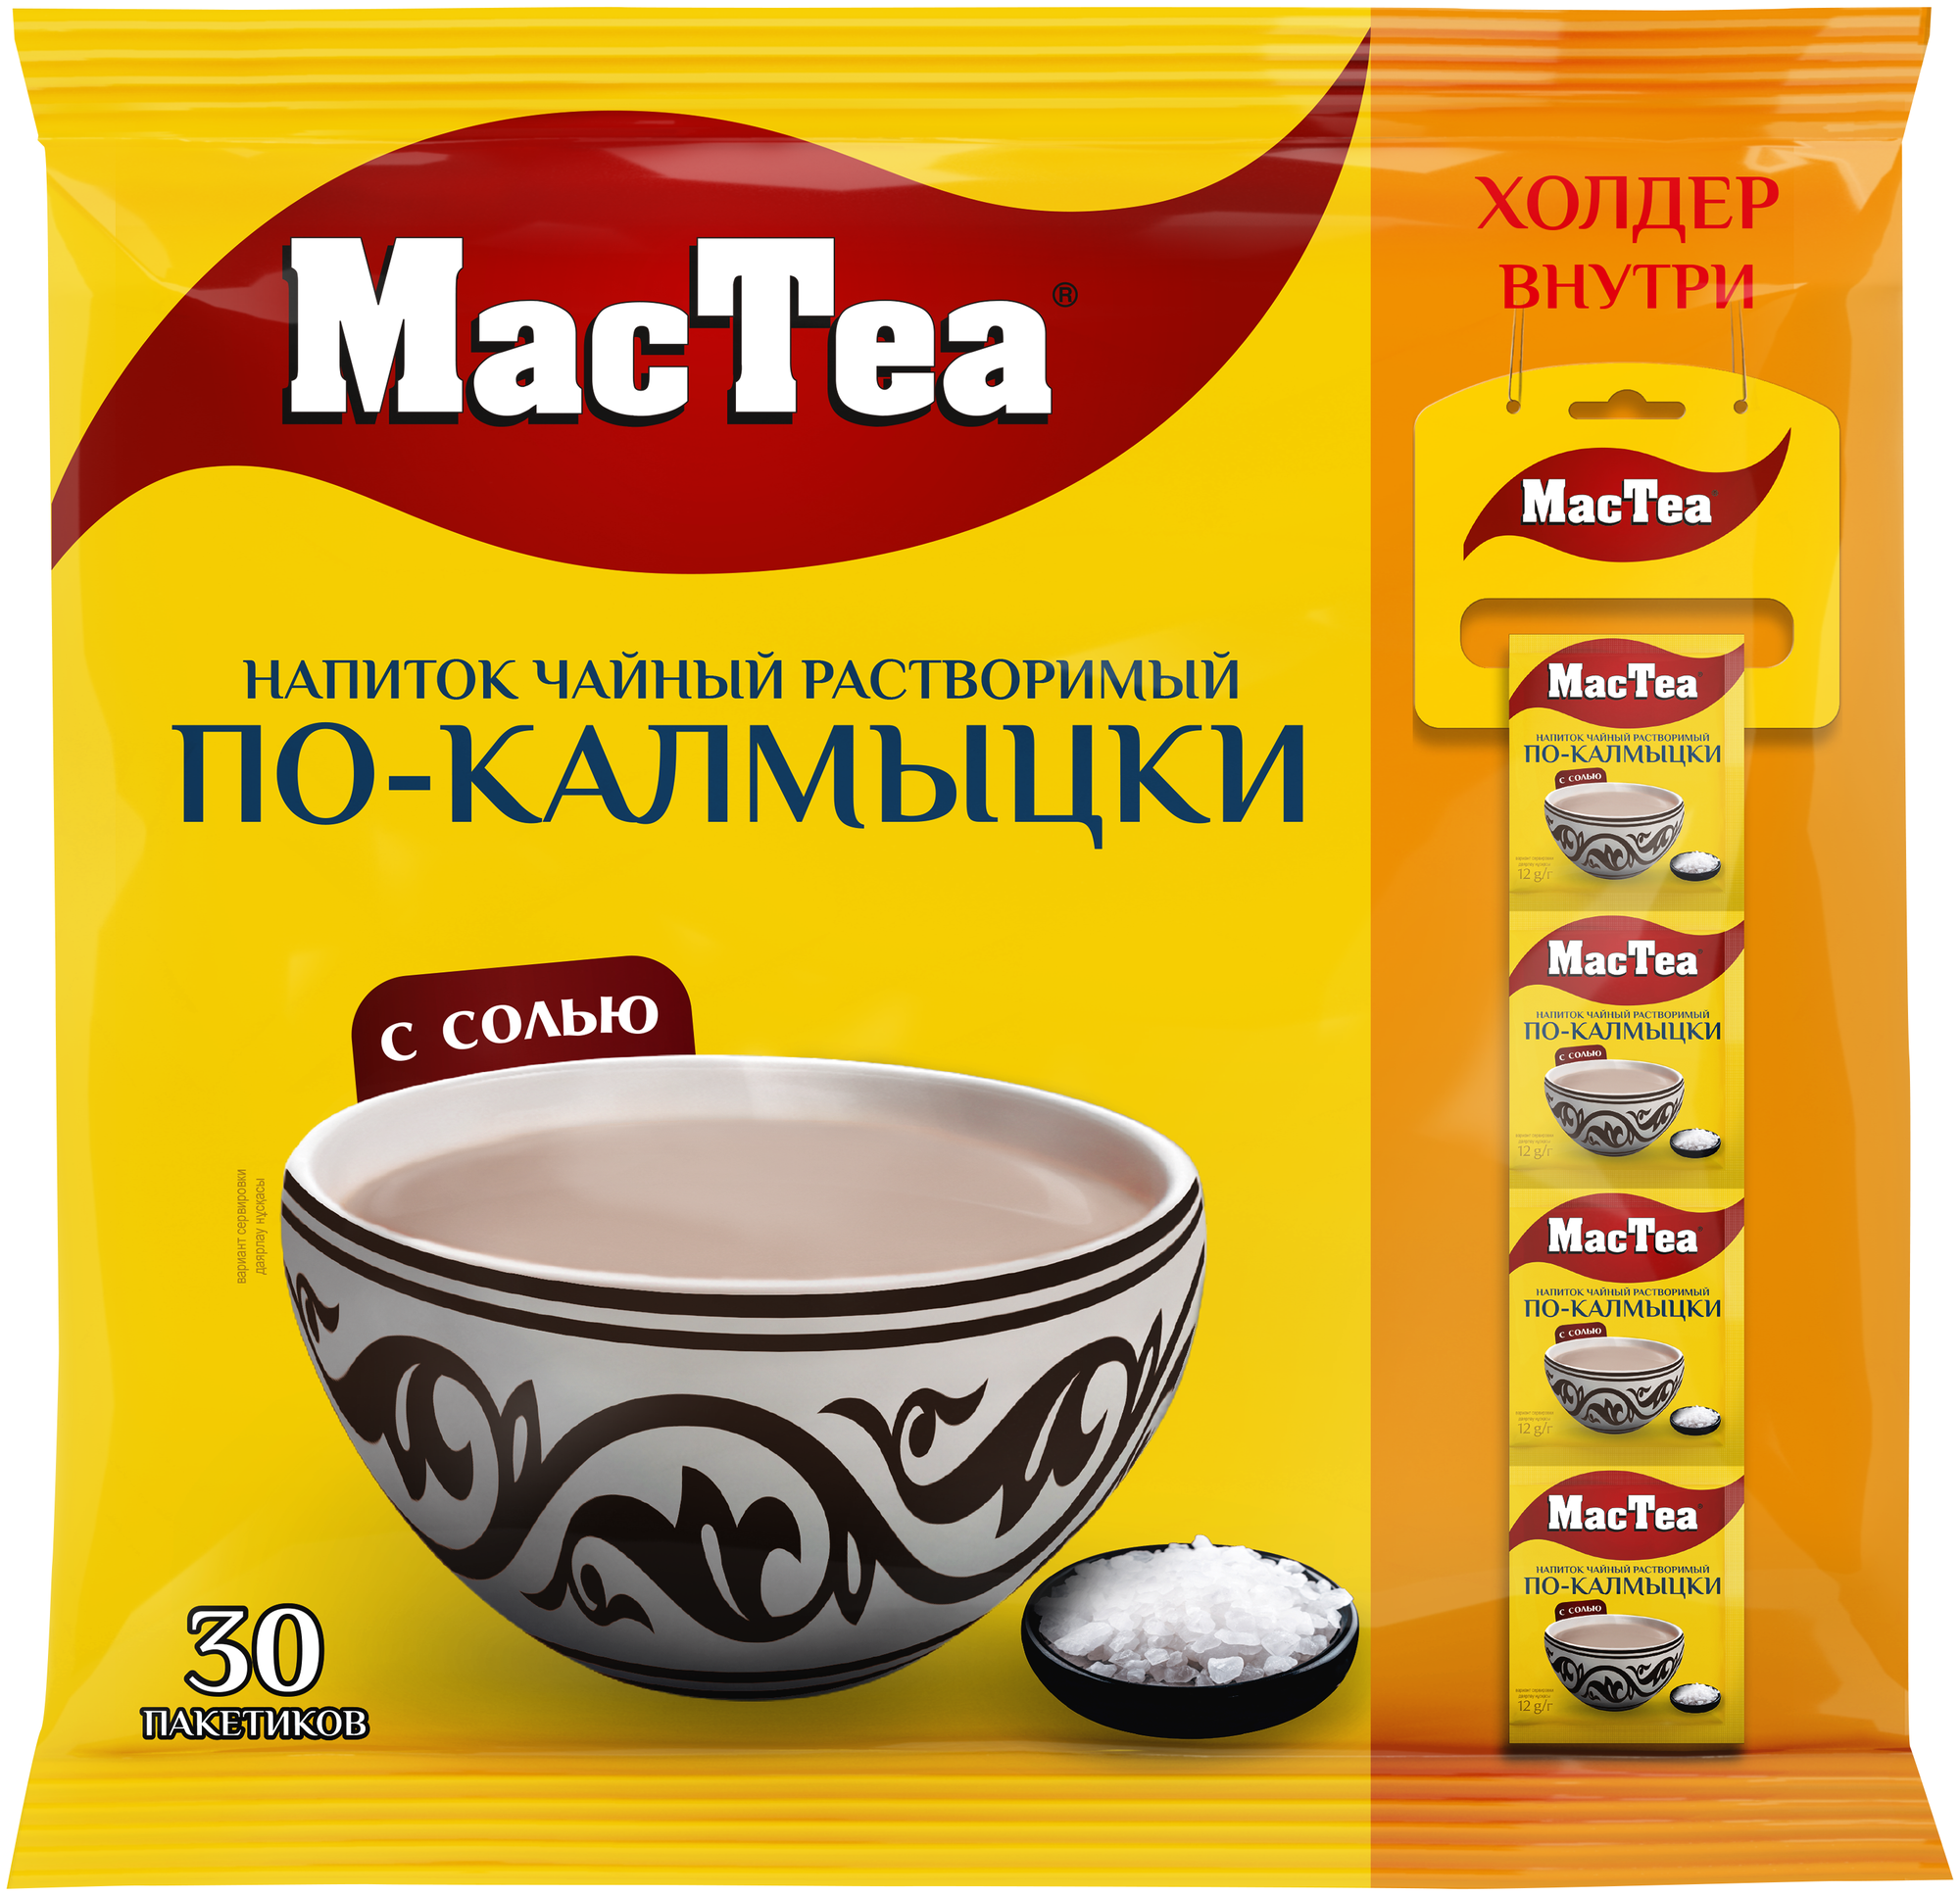 Напиток чайный растворимый т.з. "MacTea" по-калмыцки с солью 12г 30 пакетиков в упаковке - фотография № 1